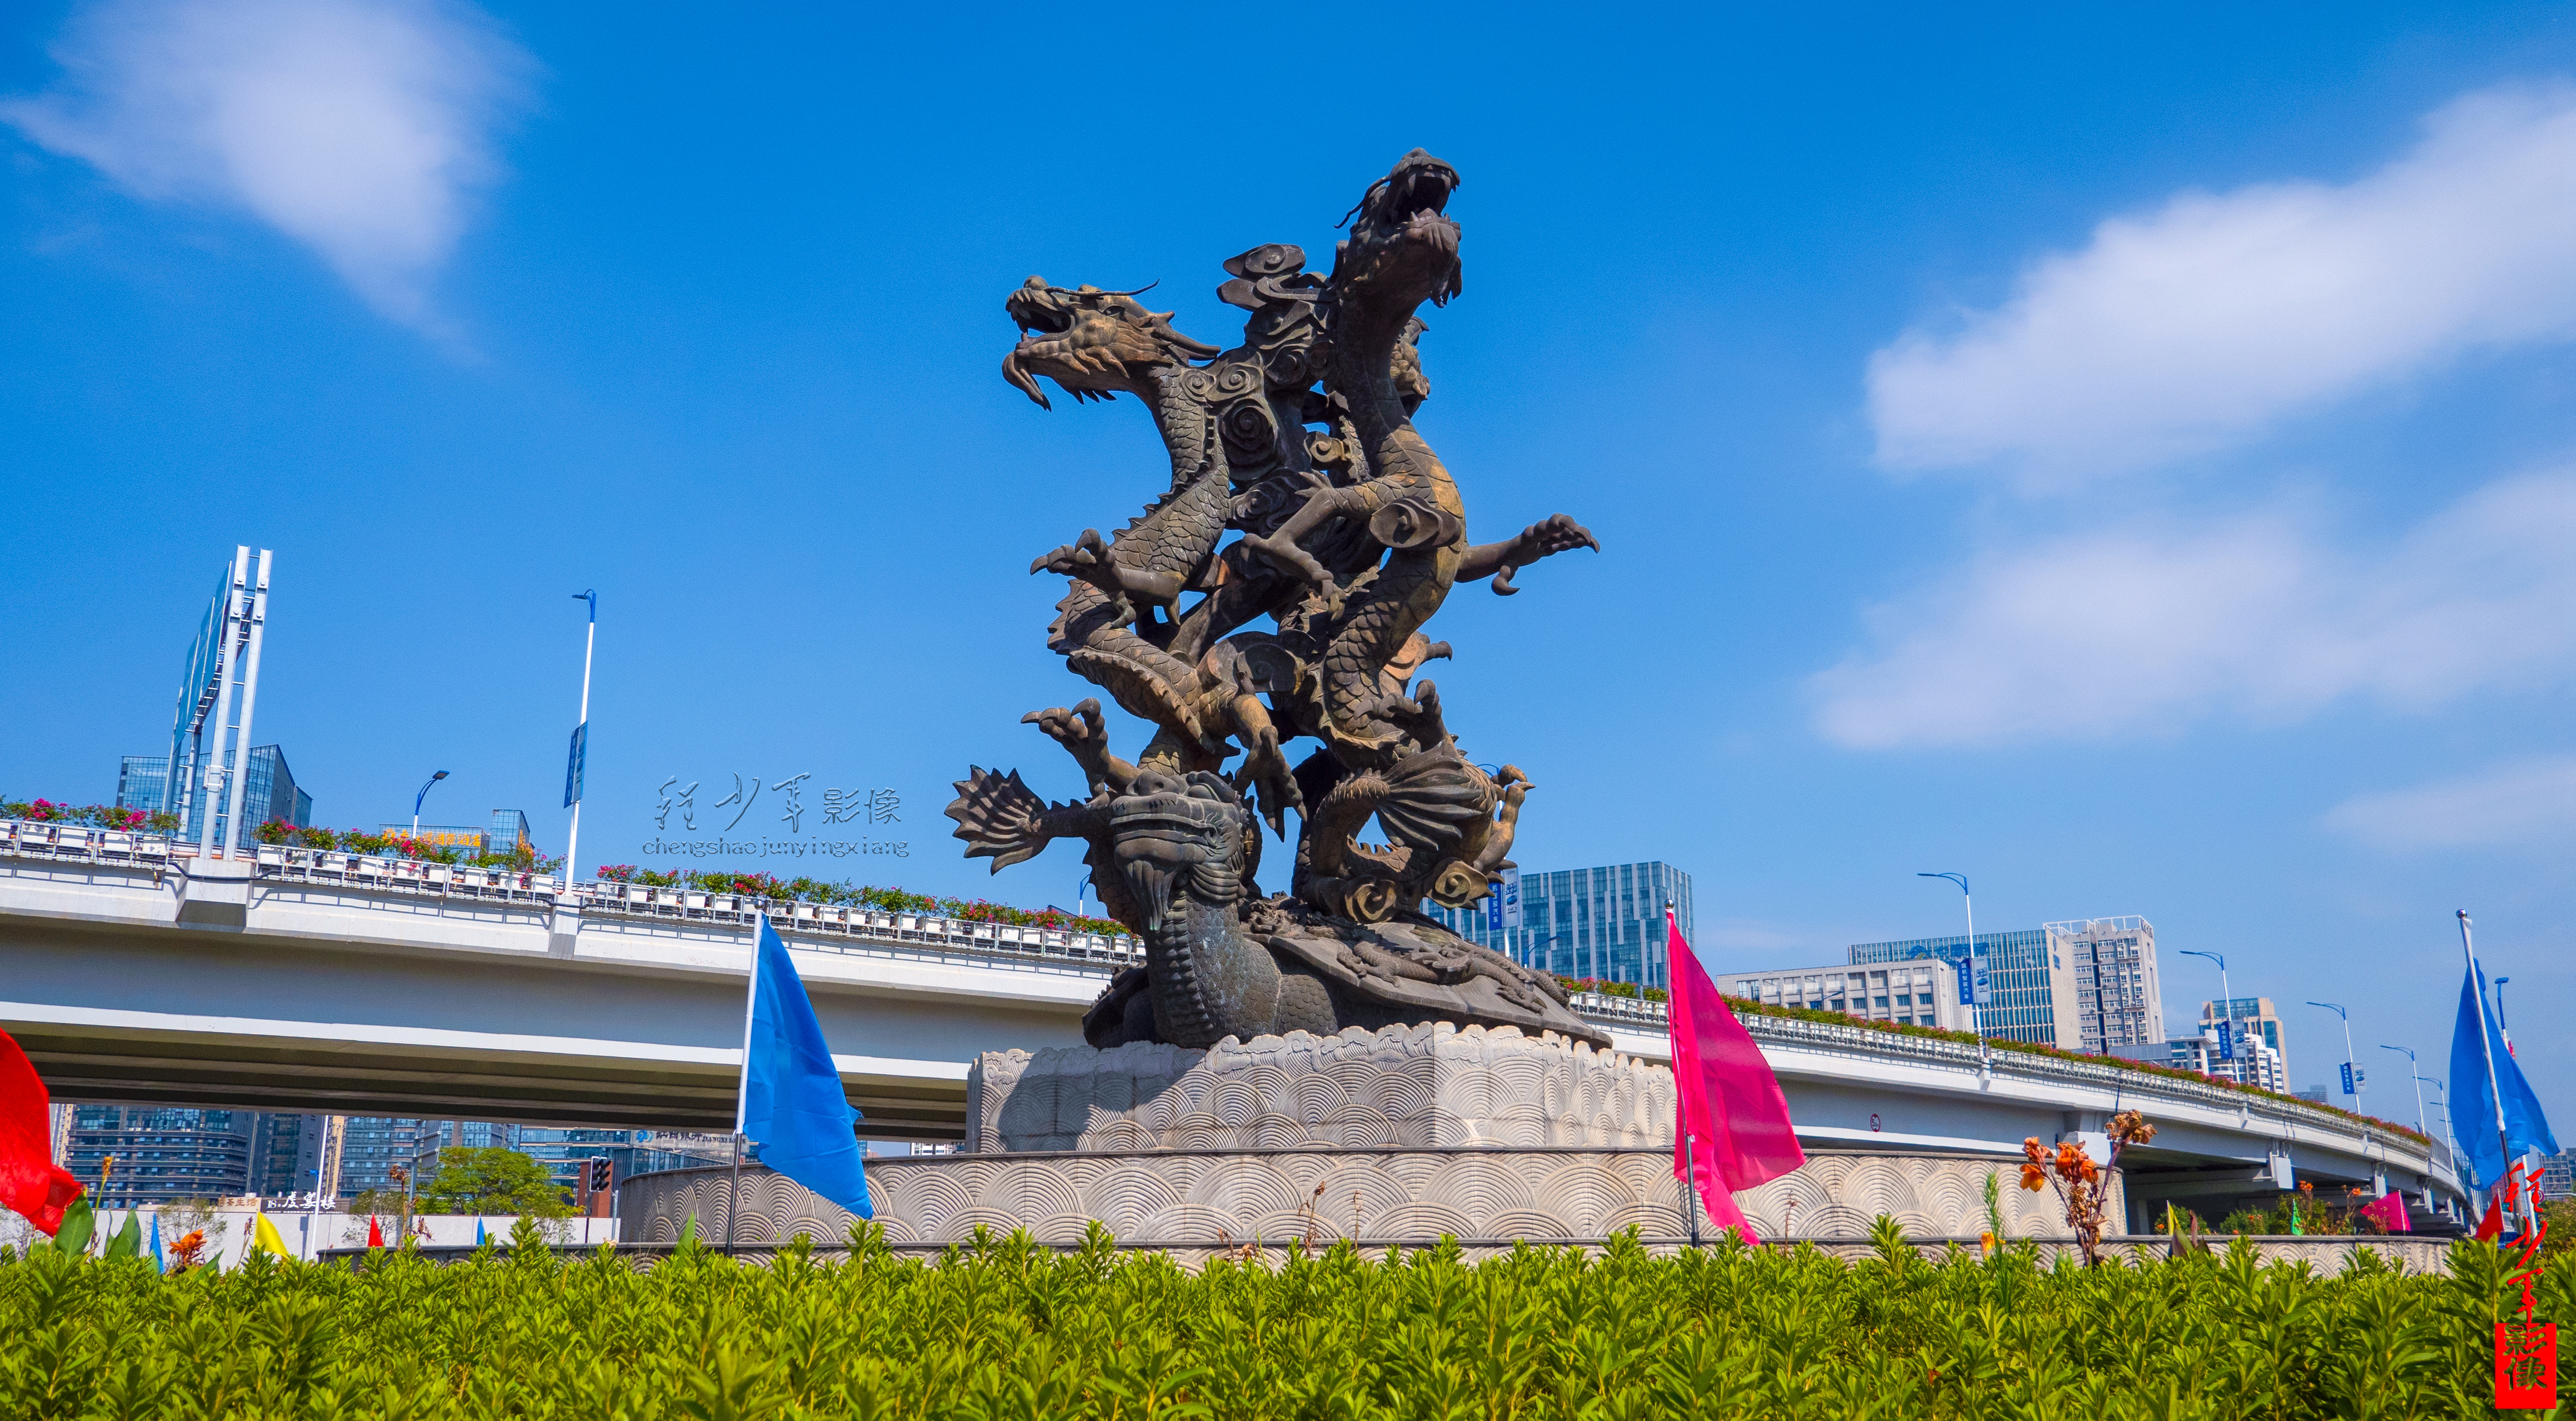 十龙聚龟,赣州标志性城市雕塑之一,曾被评选为全国十大丑陋雕塑